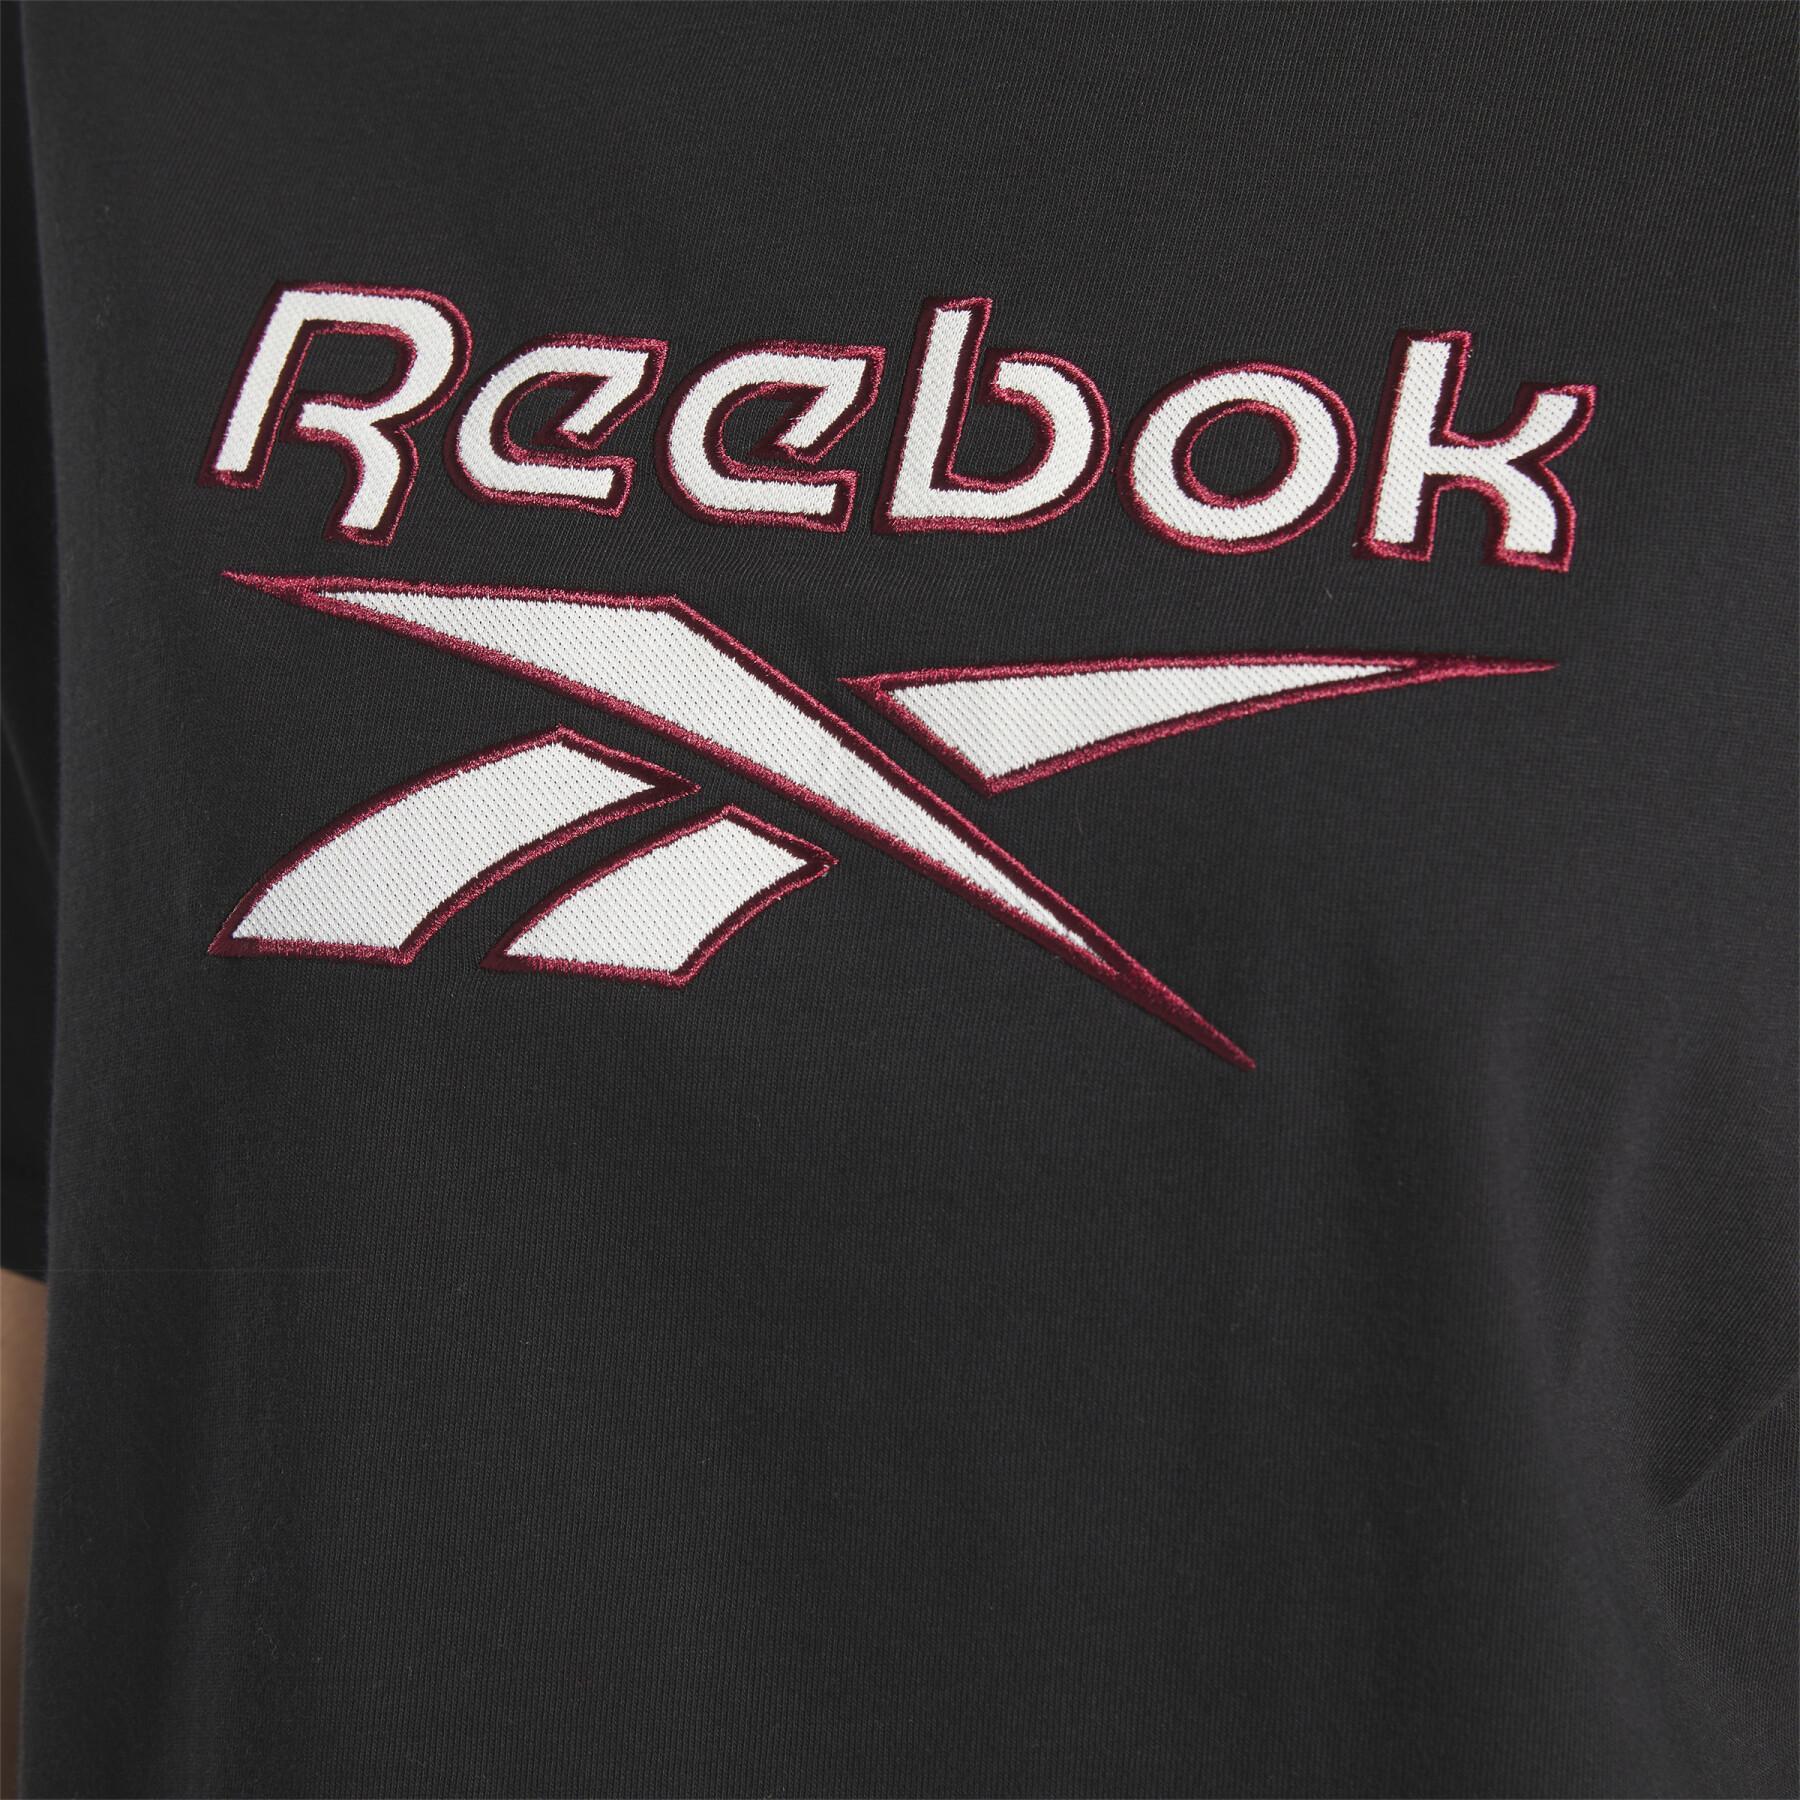 T-shirt crop top femme Reebok Classics Big Logo